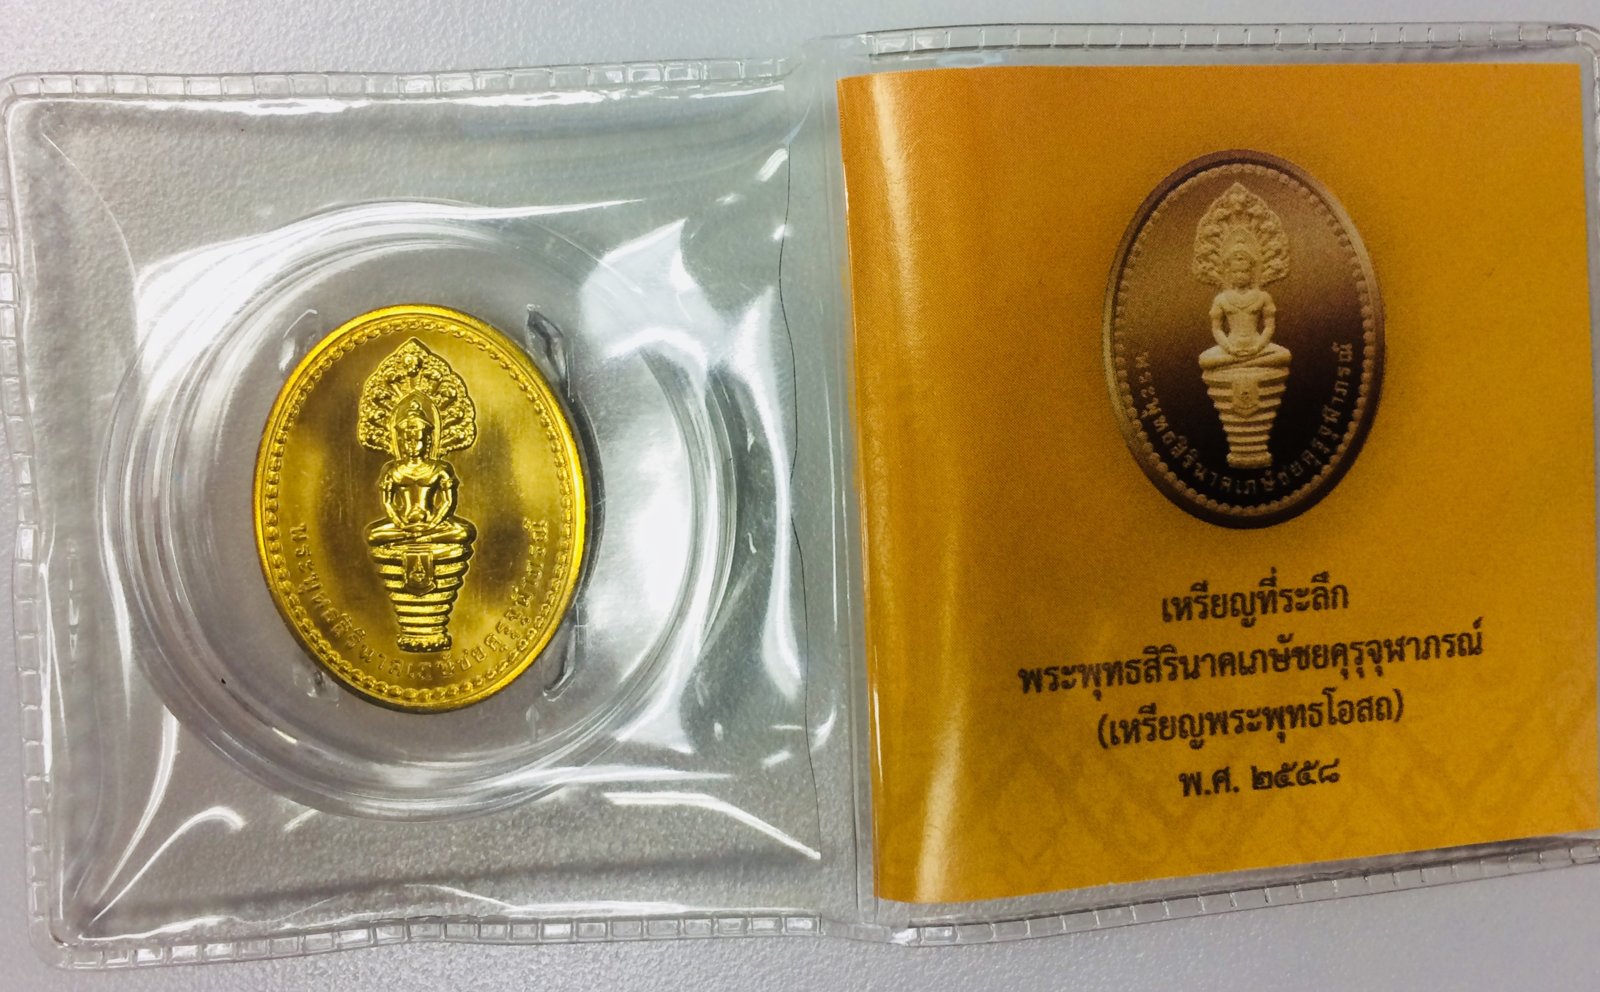 เหรียญพระพุทธสิรินาคเภษัชยคุรุจุฬาภรณ์ ปี 2558 - หน้า.JPG